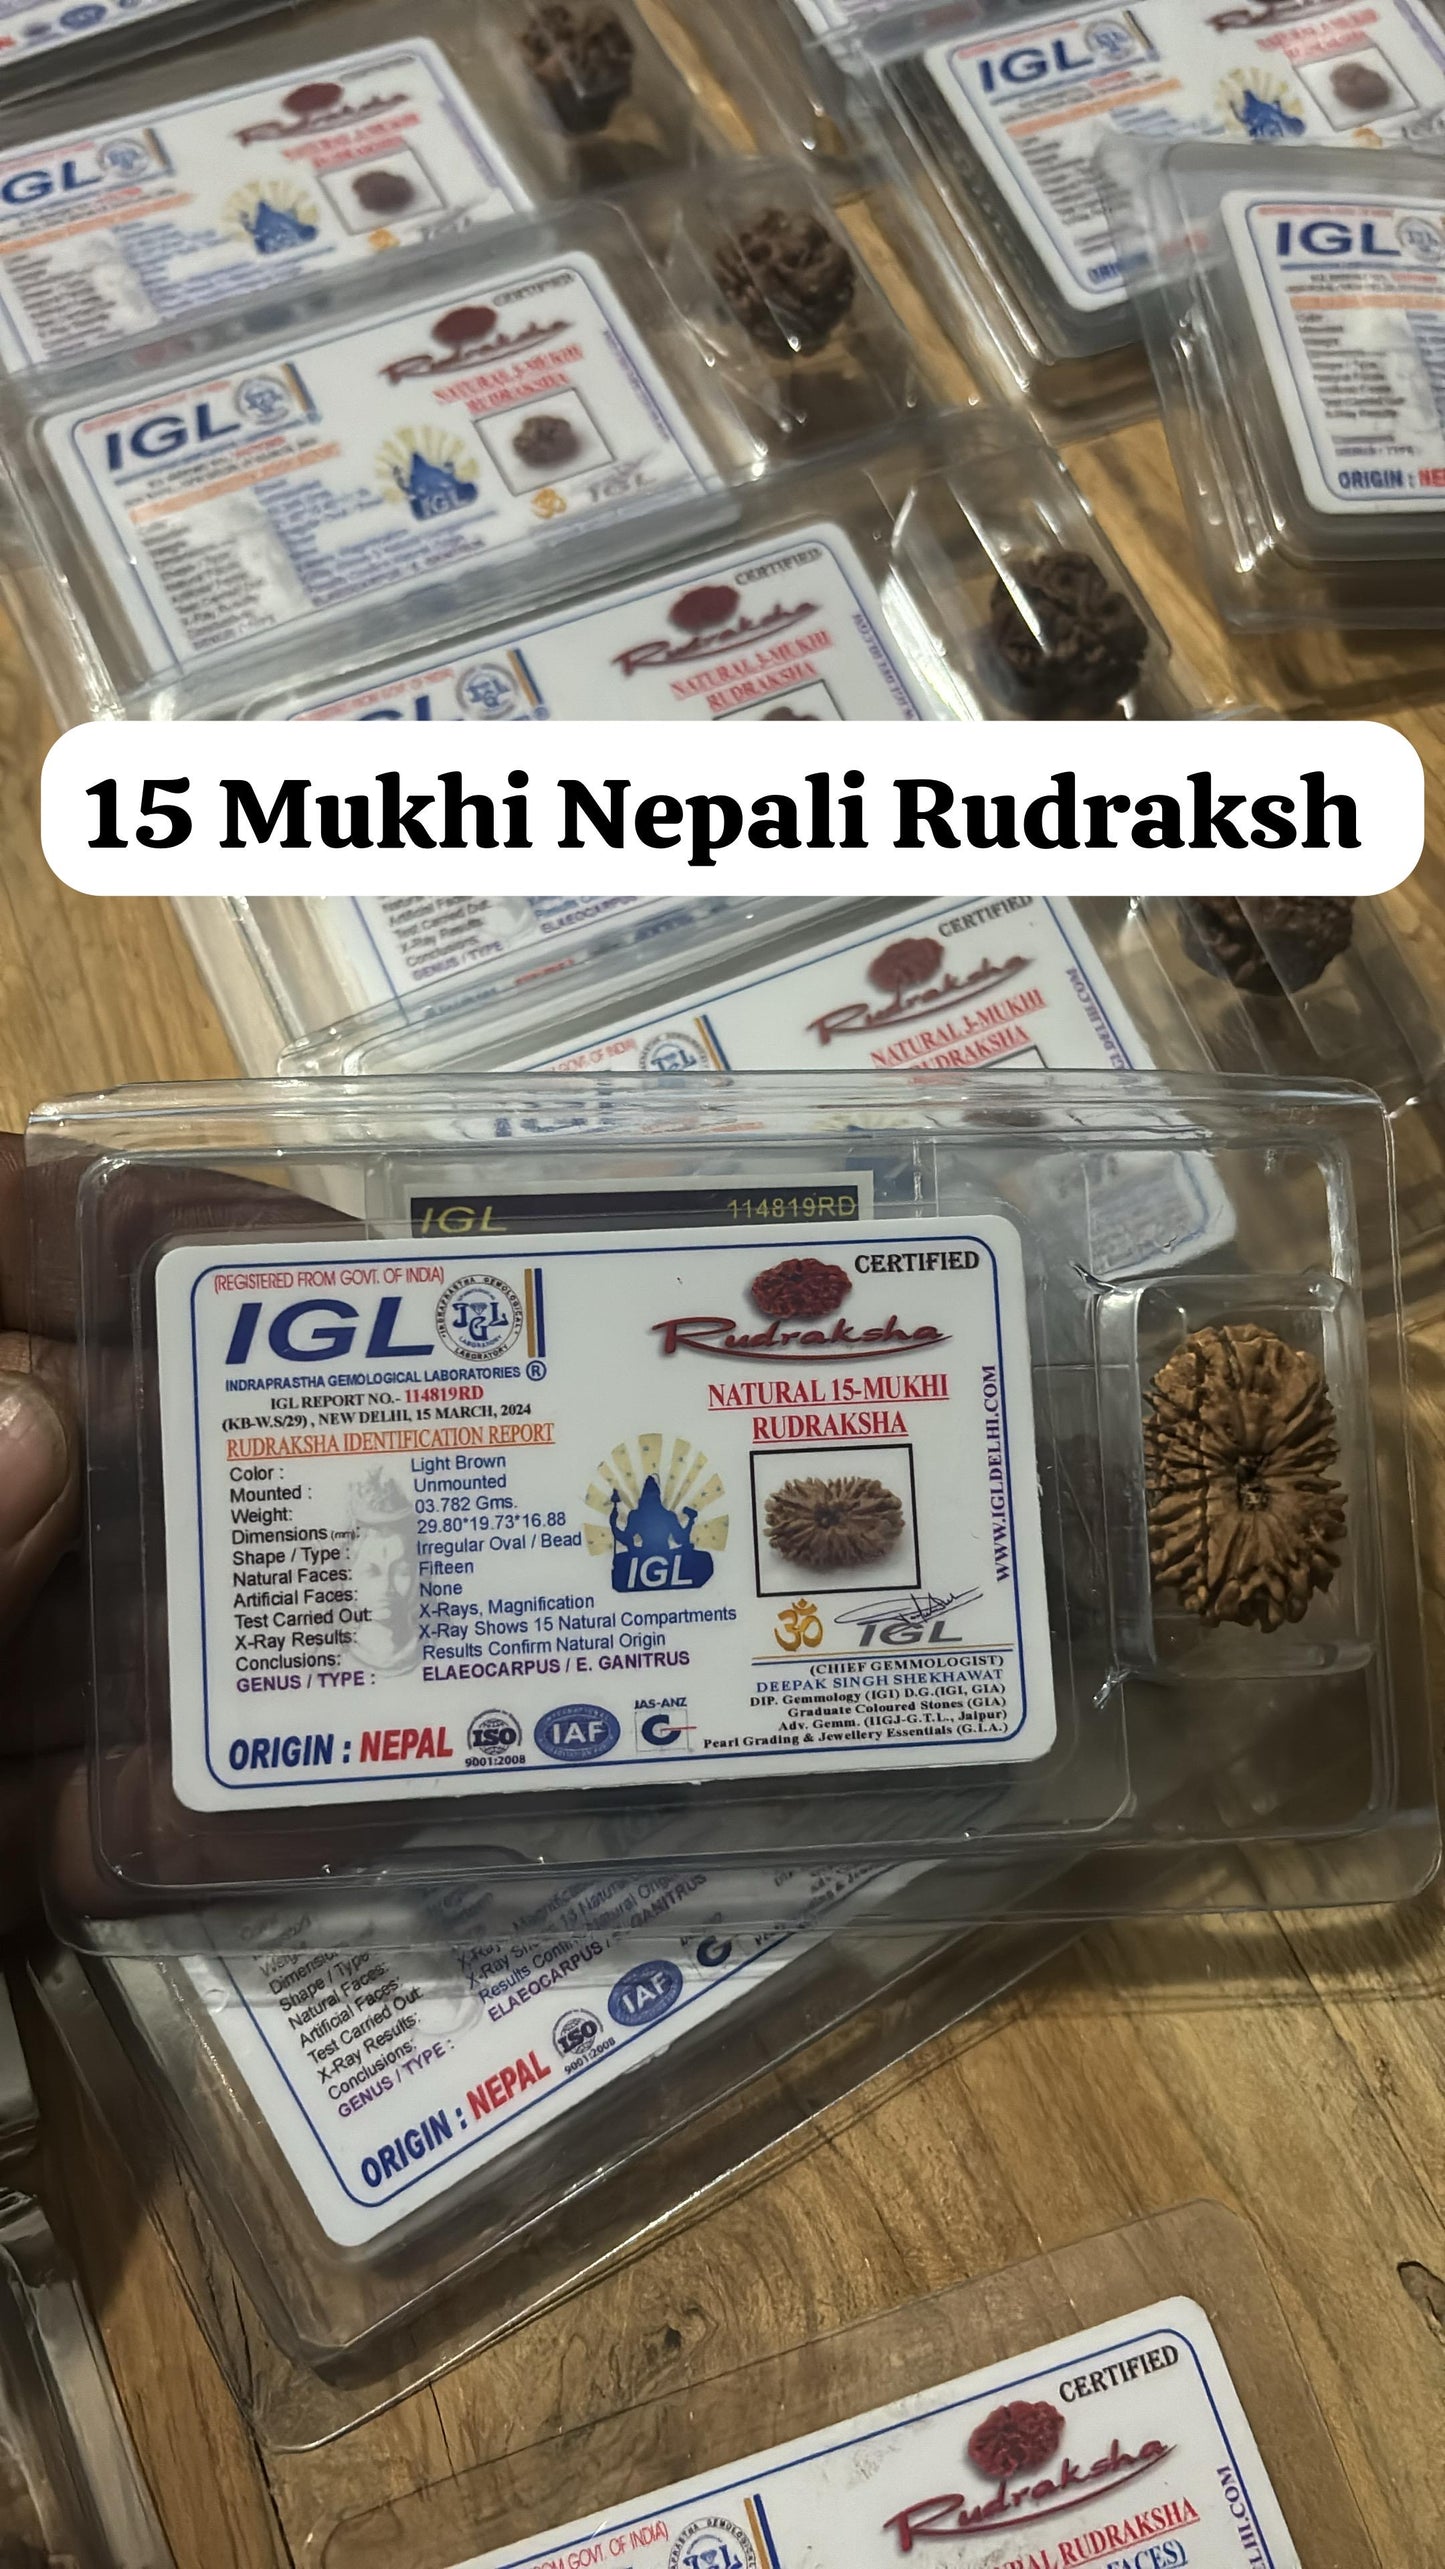 15 MUKHI RUDRAKSHA NEPAL